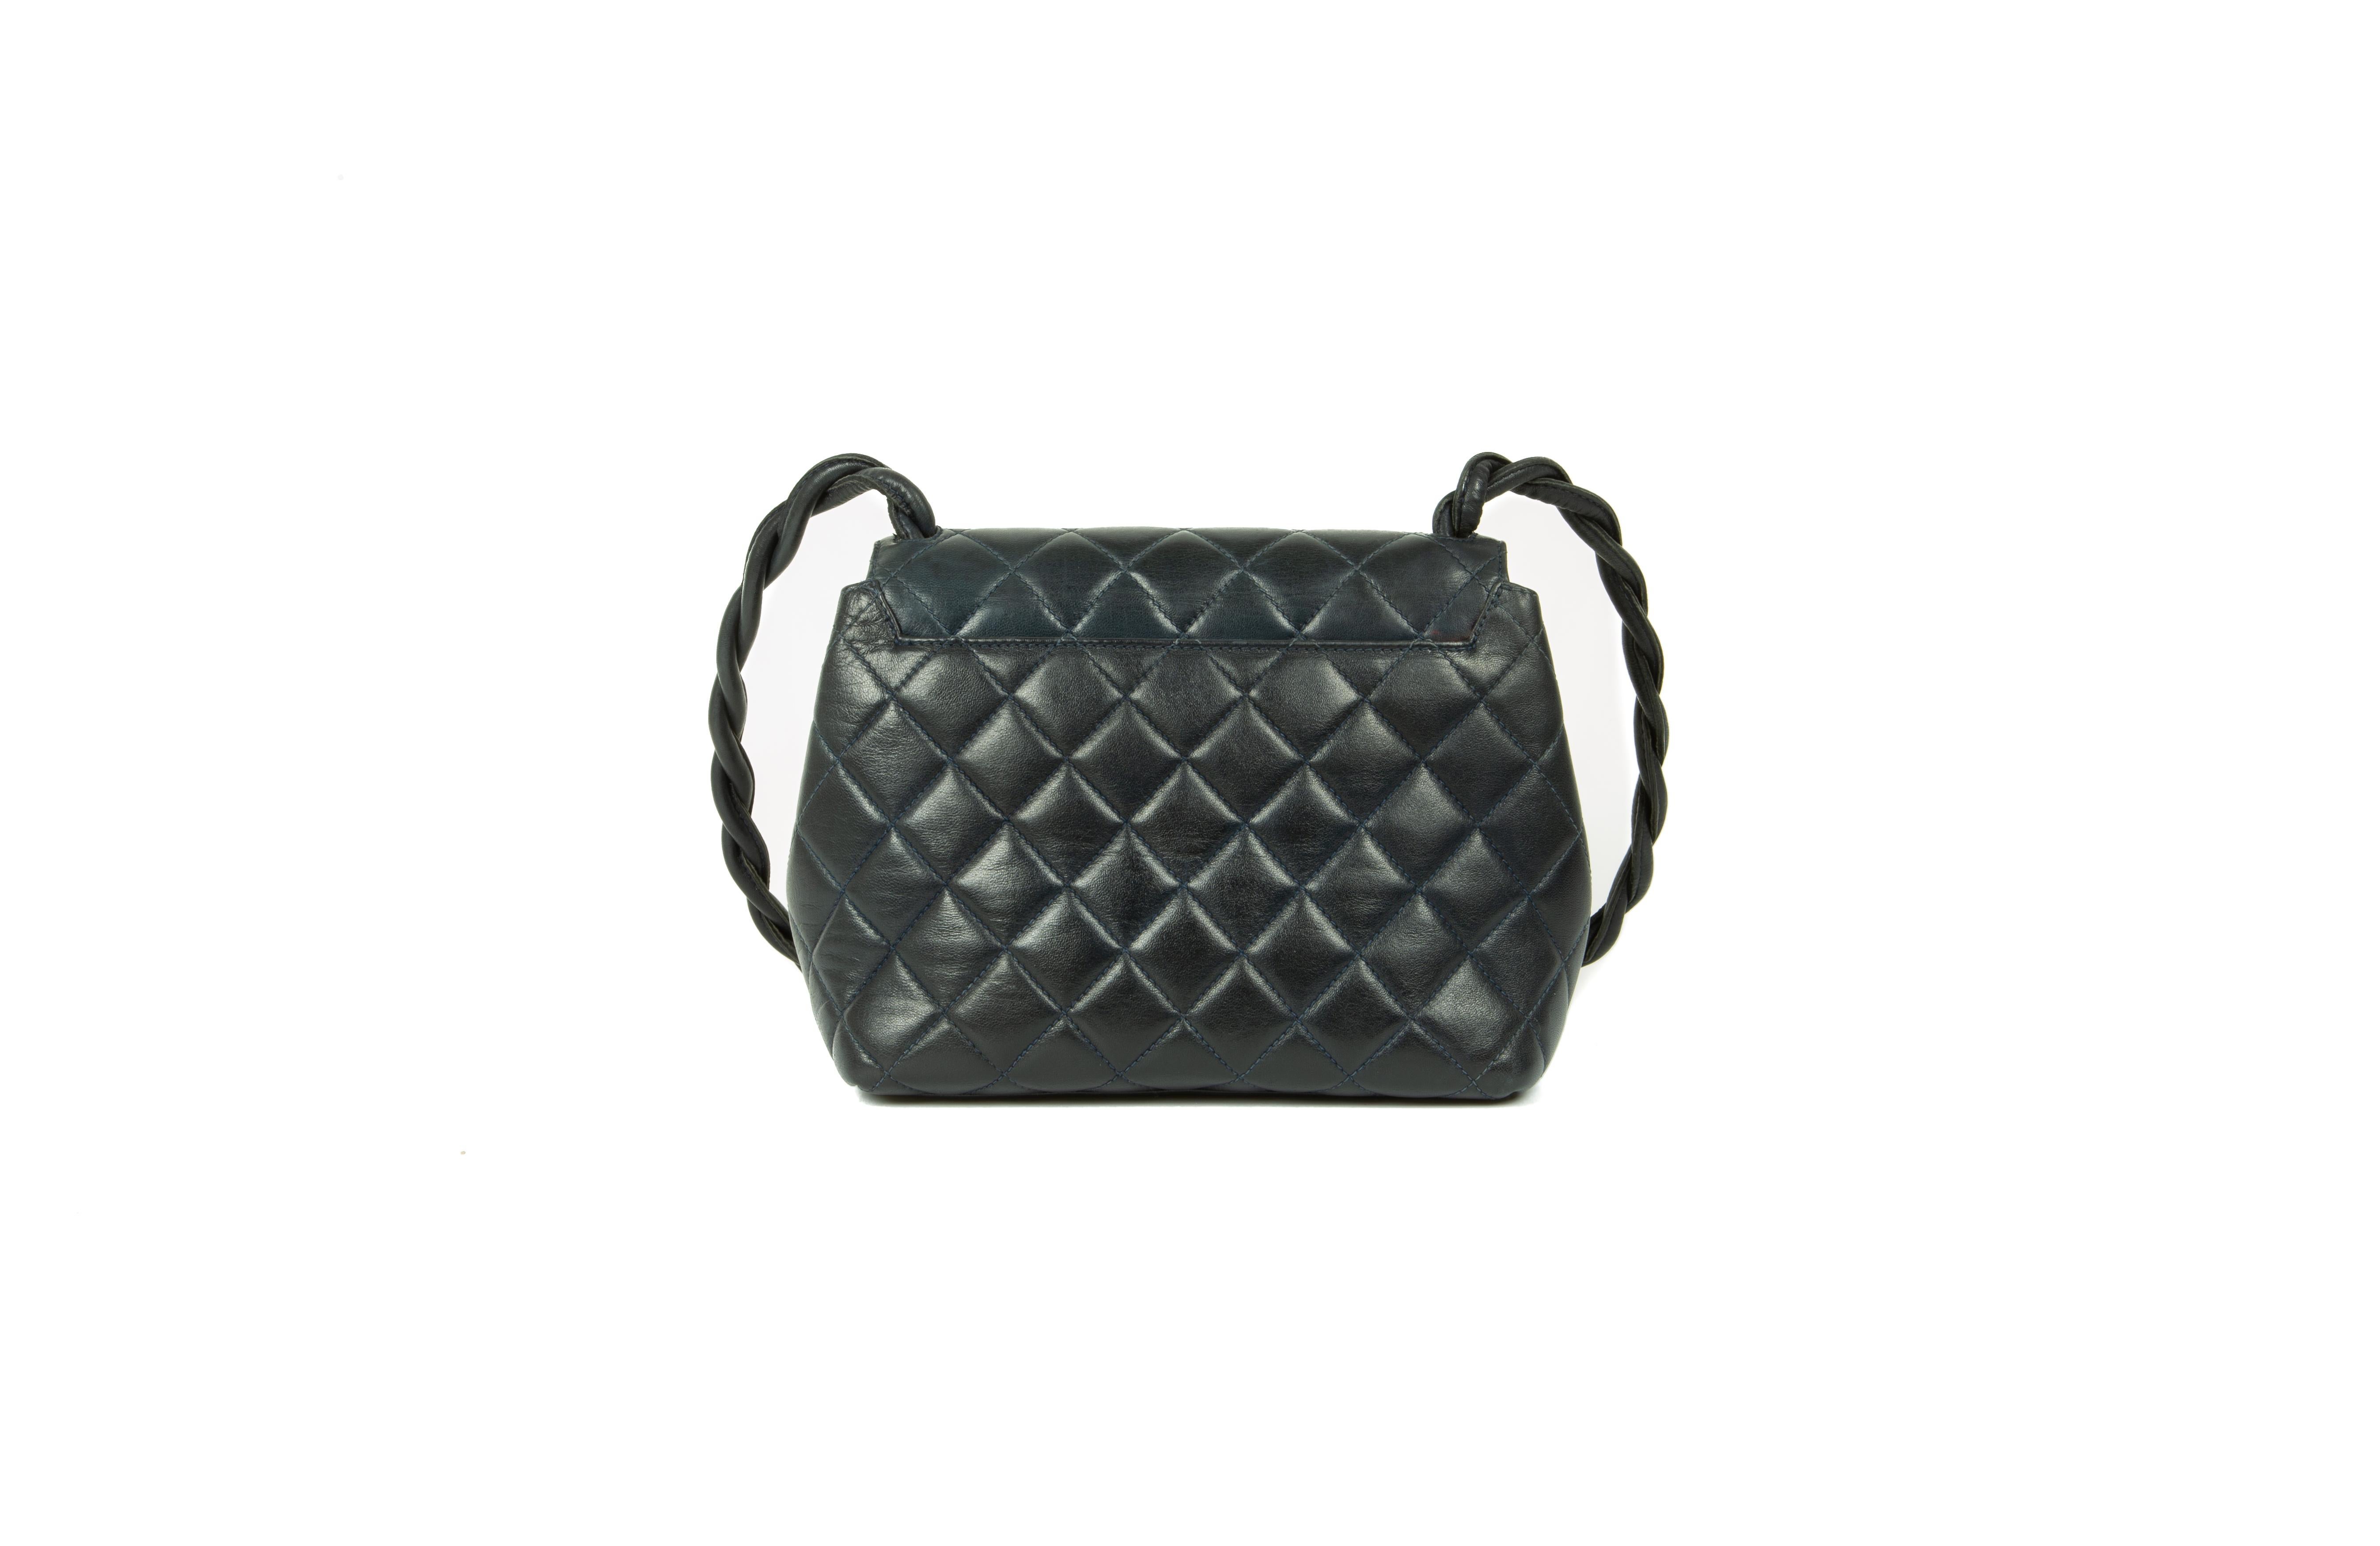 Women's 1980s Chanel Dark-Midnight-Blue Leather Shoulder Bag